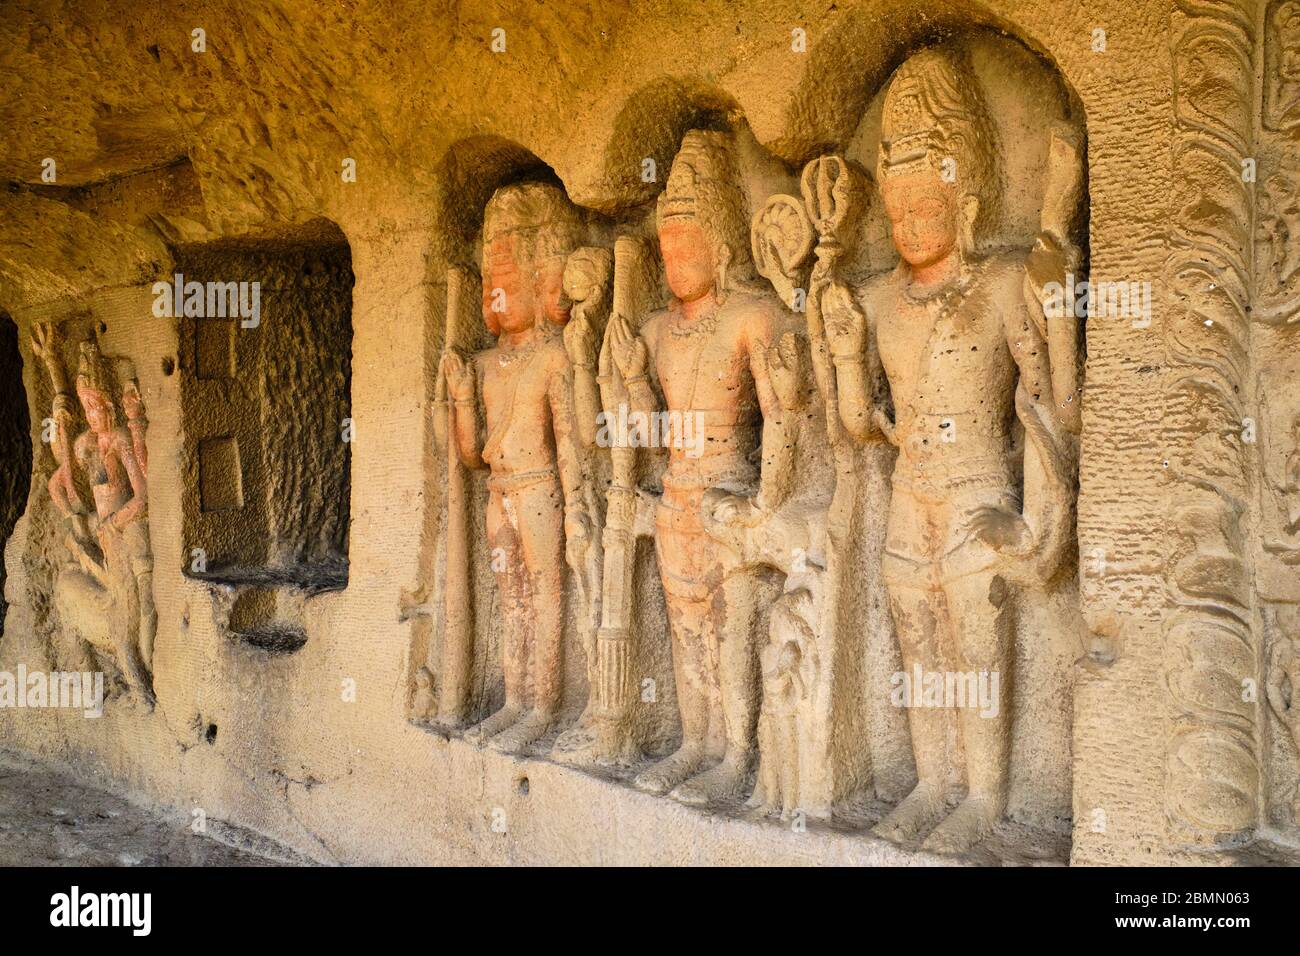 Inde, Maharashtra, temple de la grotte d'Ellora, patrimoine mondial de l'UNESCO, grotte N°27 Banque D'Images